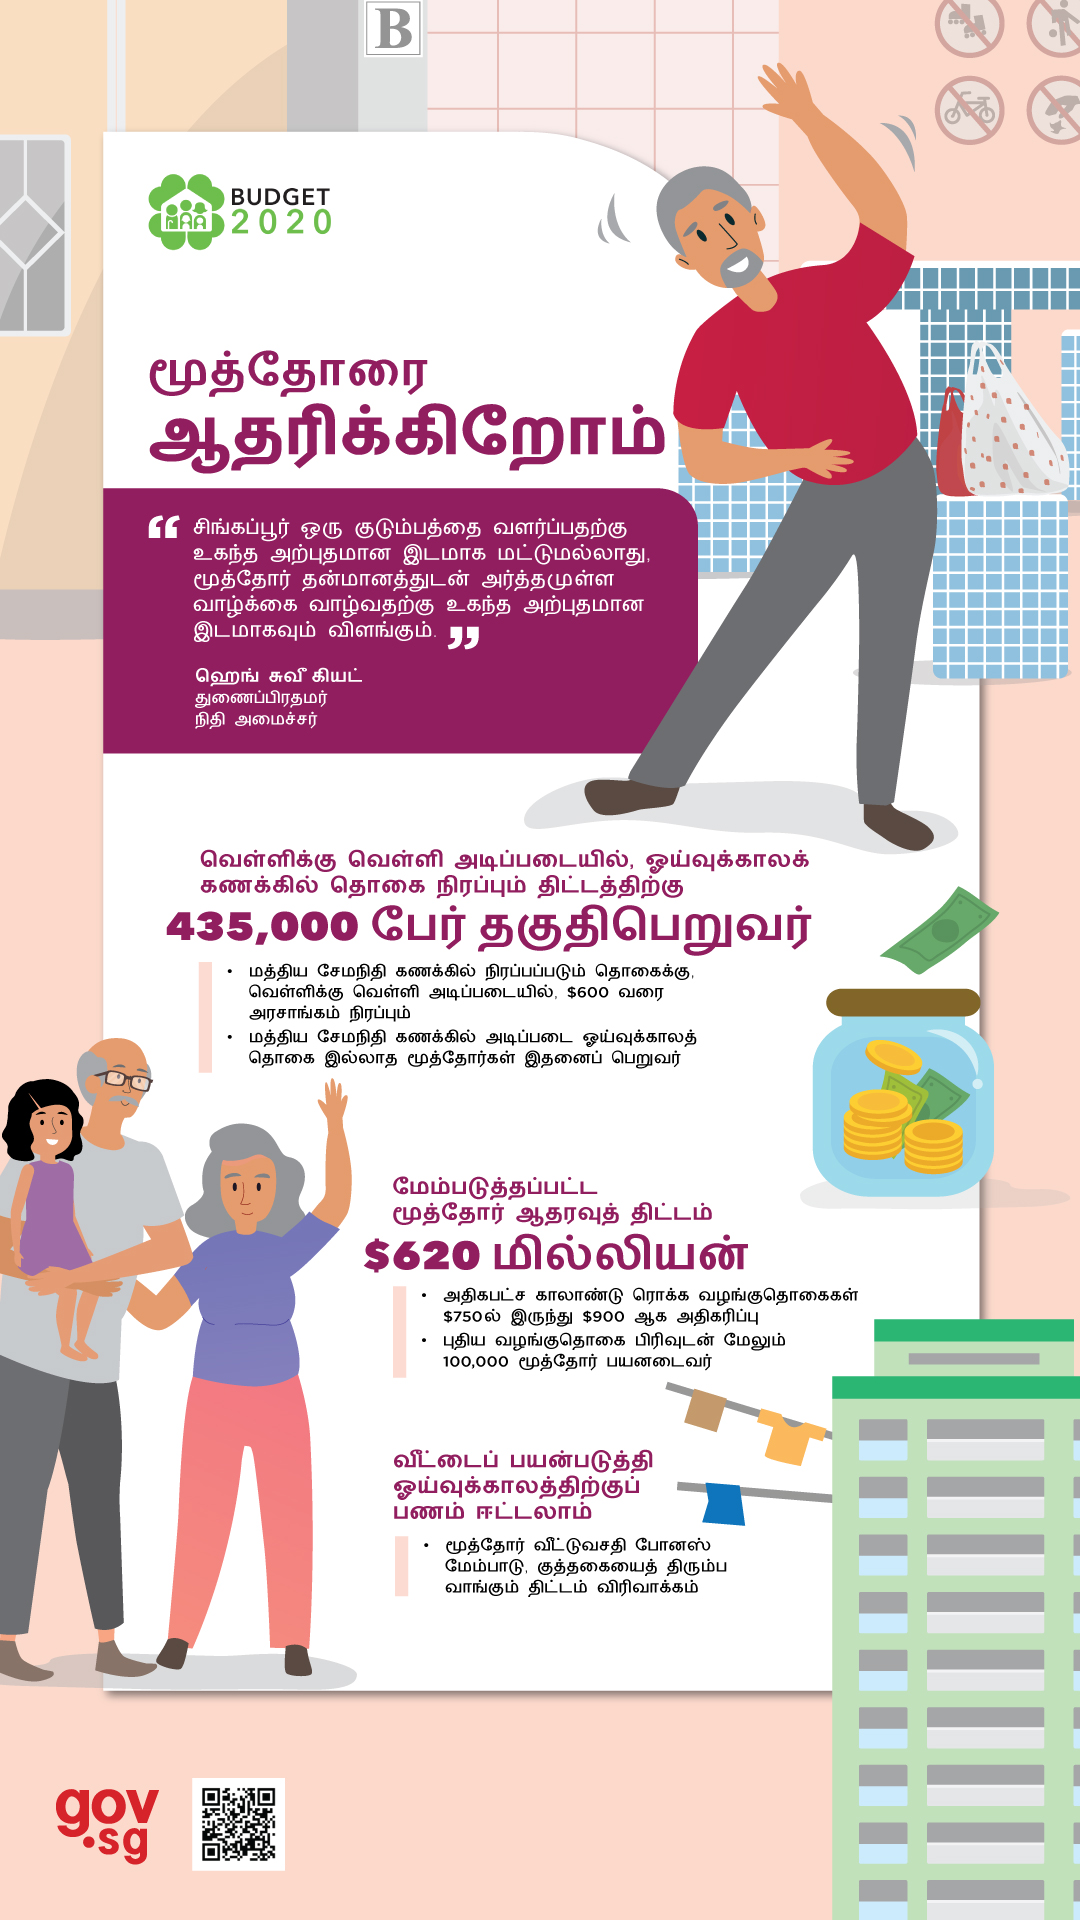 Tamil - Greater assurance for seniors in retirement